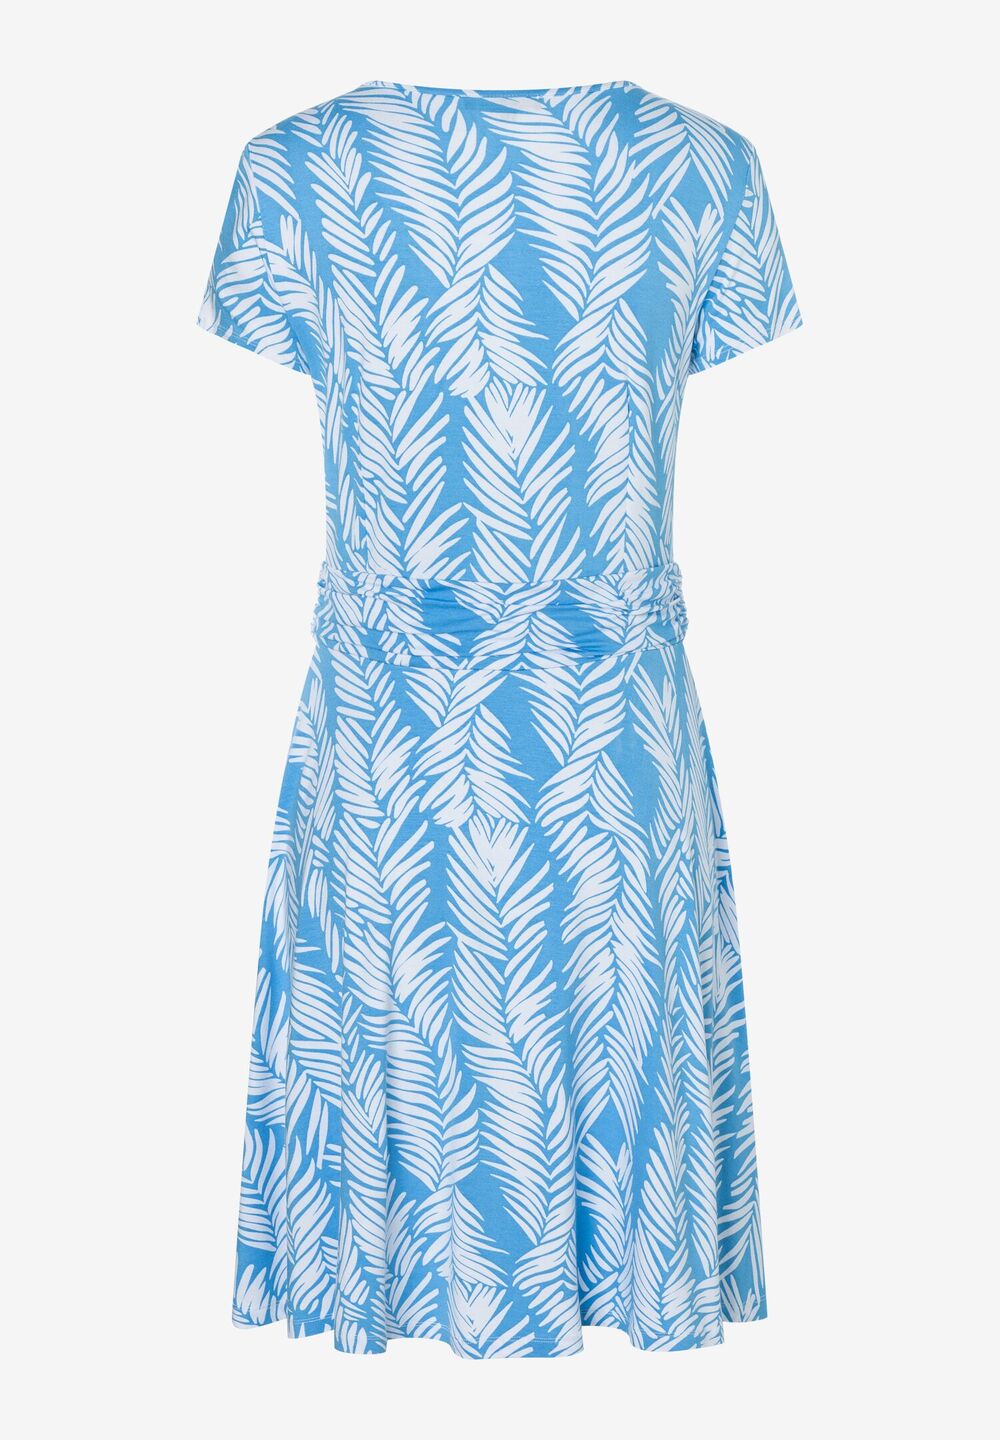 Jerseykleid, Palmblätter-Print, Sommer-Kollektion, blau Detailansicht 2